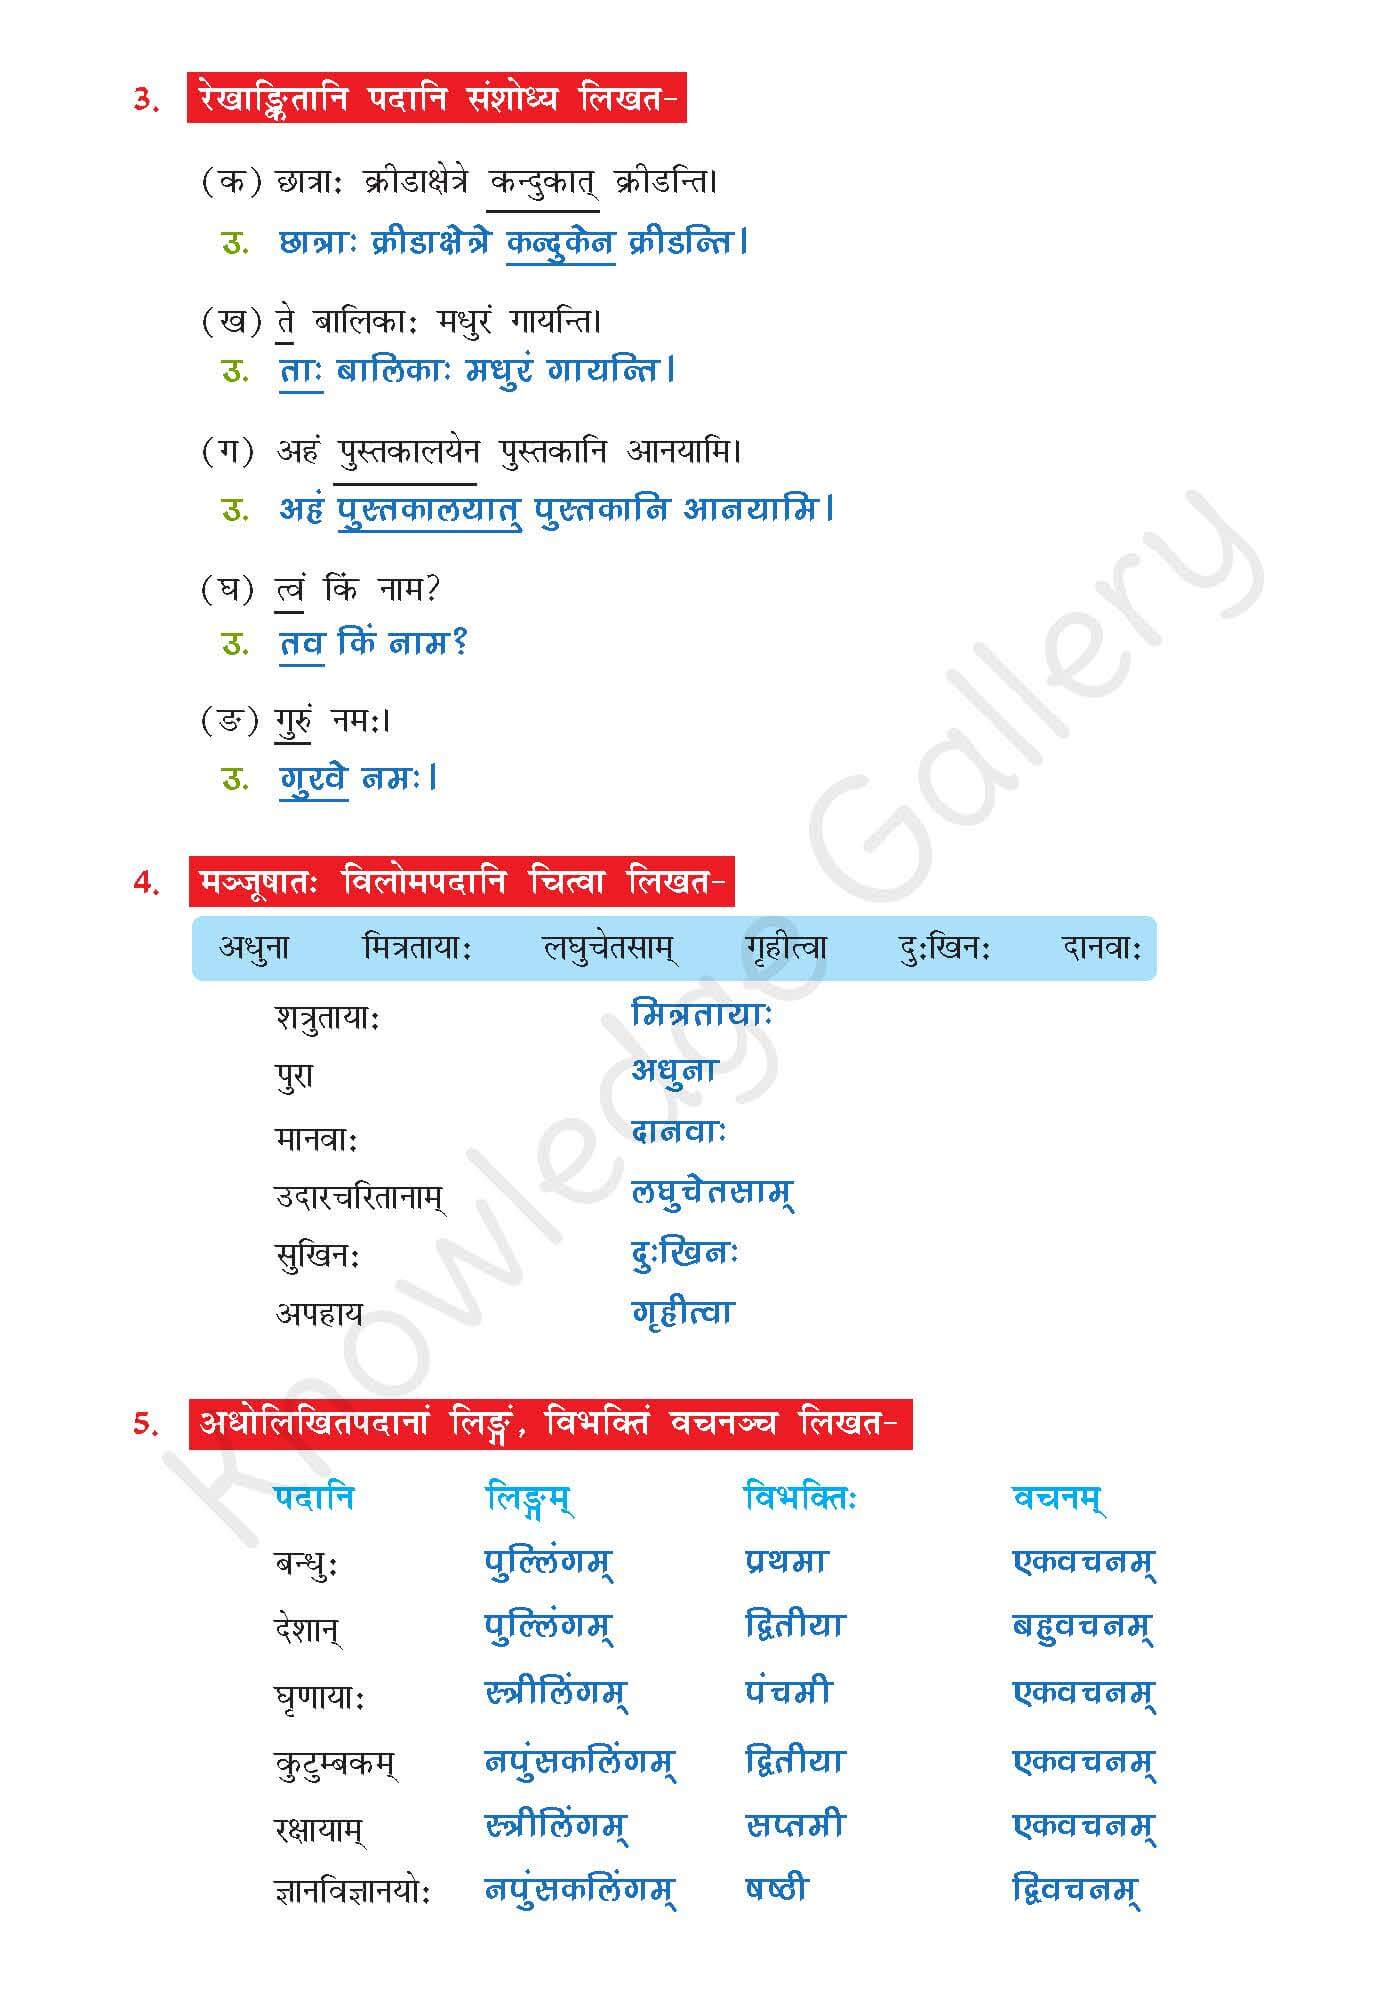 NCERT Solution For Class 7 Sanskrit Chapter 9 part 4